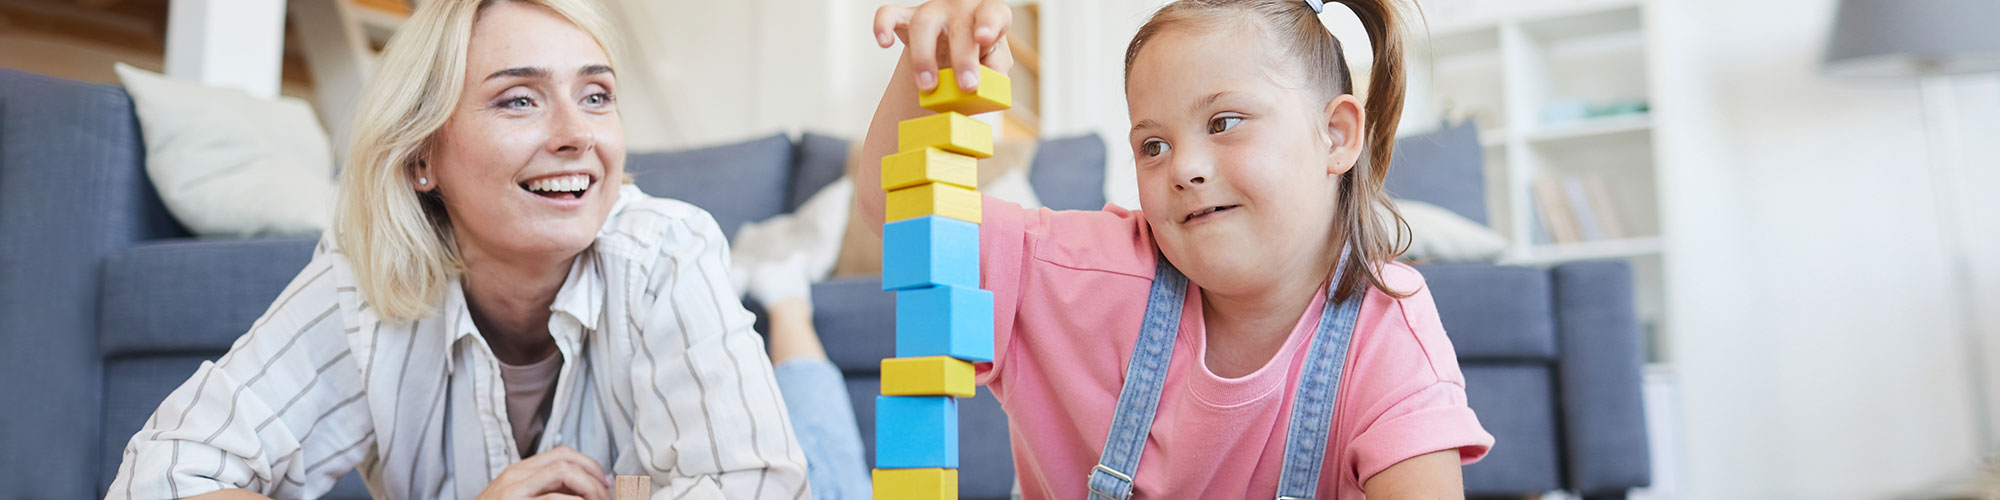 Eine Frau und Mädchen mit Down-Syndrom spielen gemeinsam am Boden und bauen einen Turm aus bunten Klötzchen.